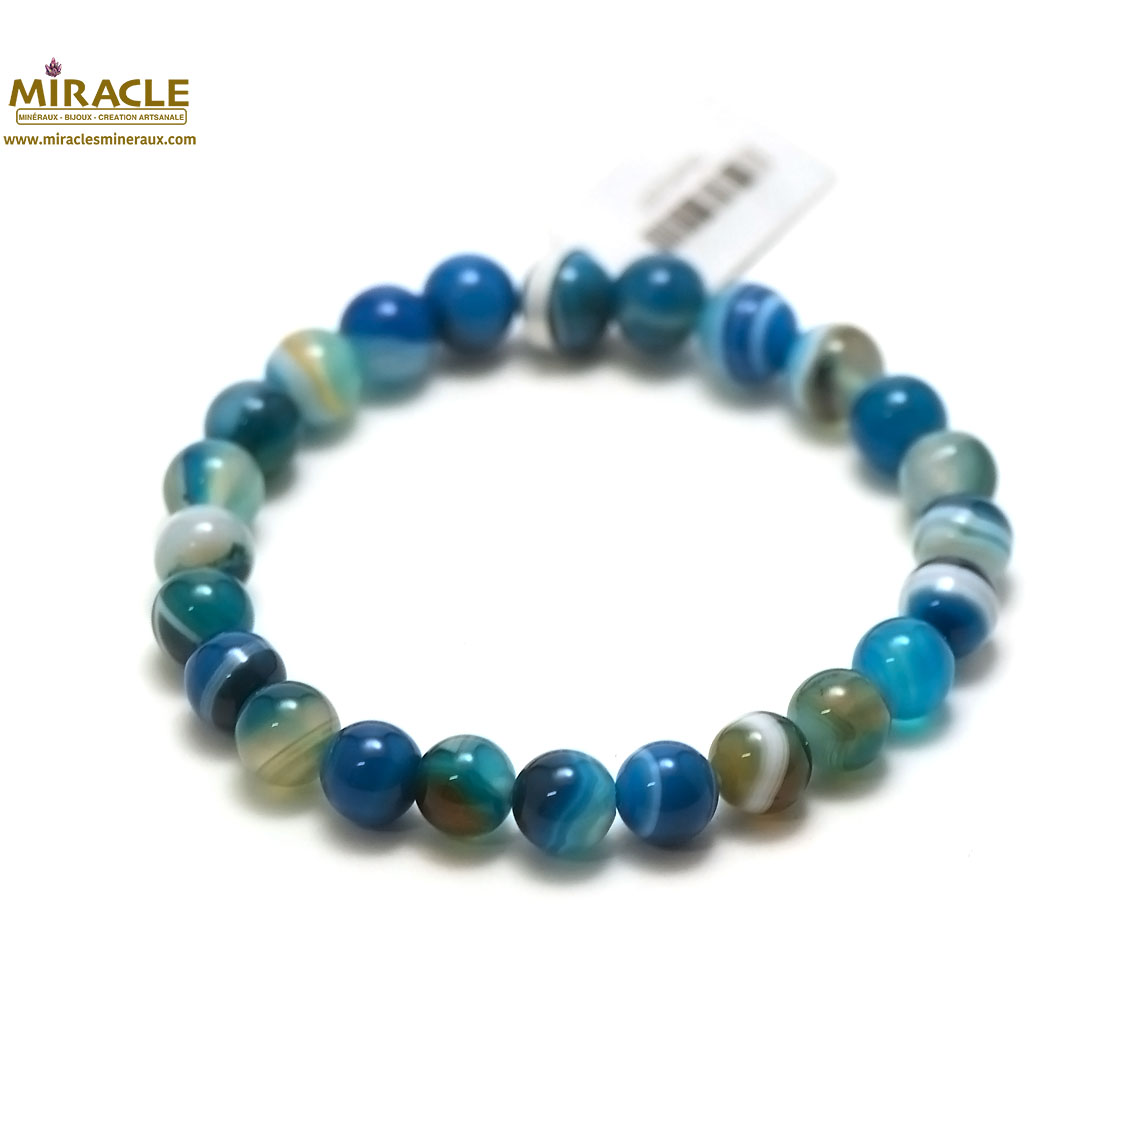 bleu 8 mm bracelet en pierre naturelle dagate